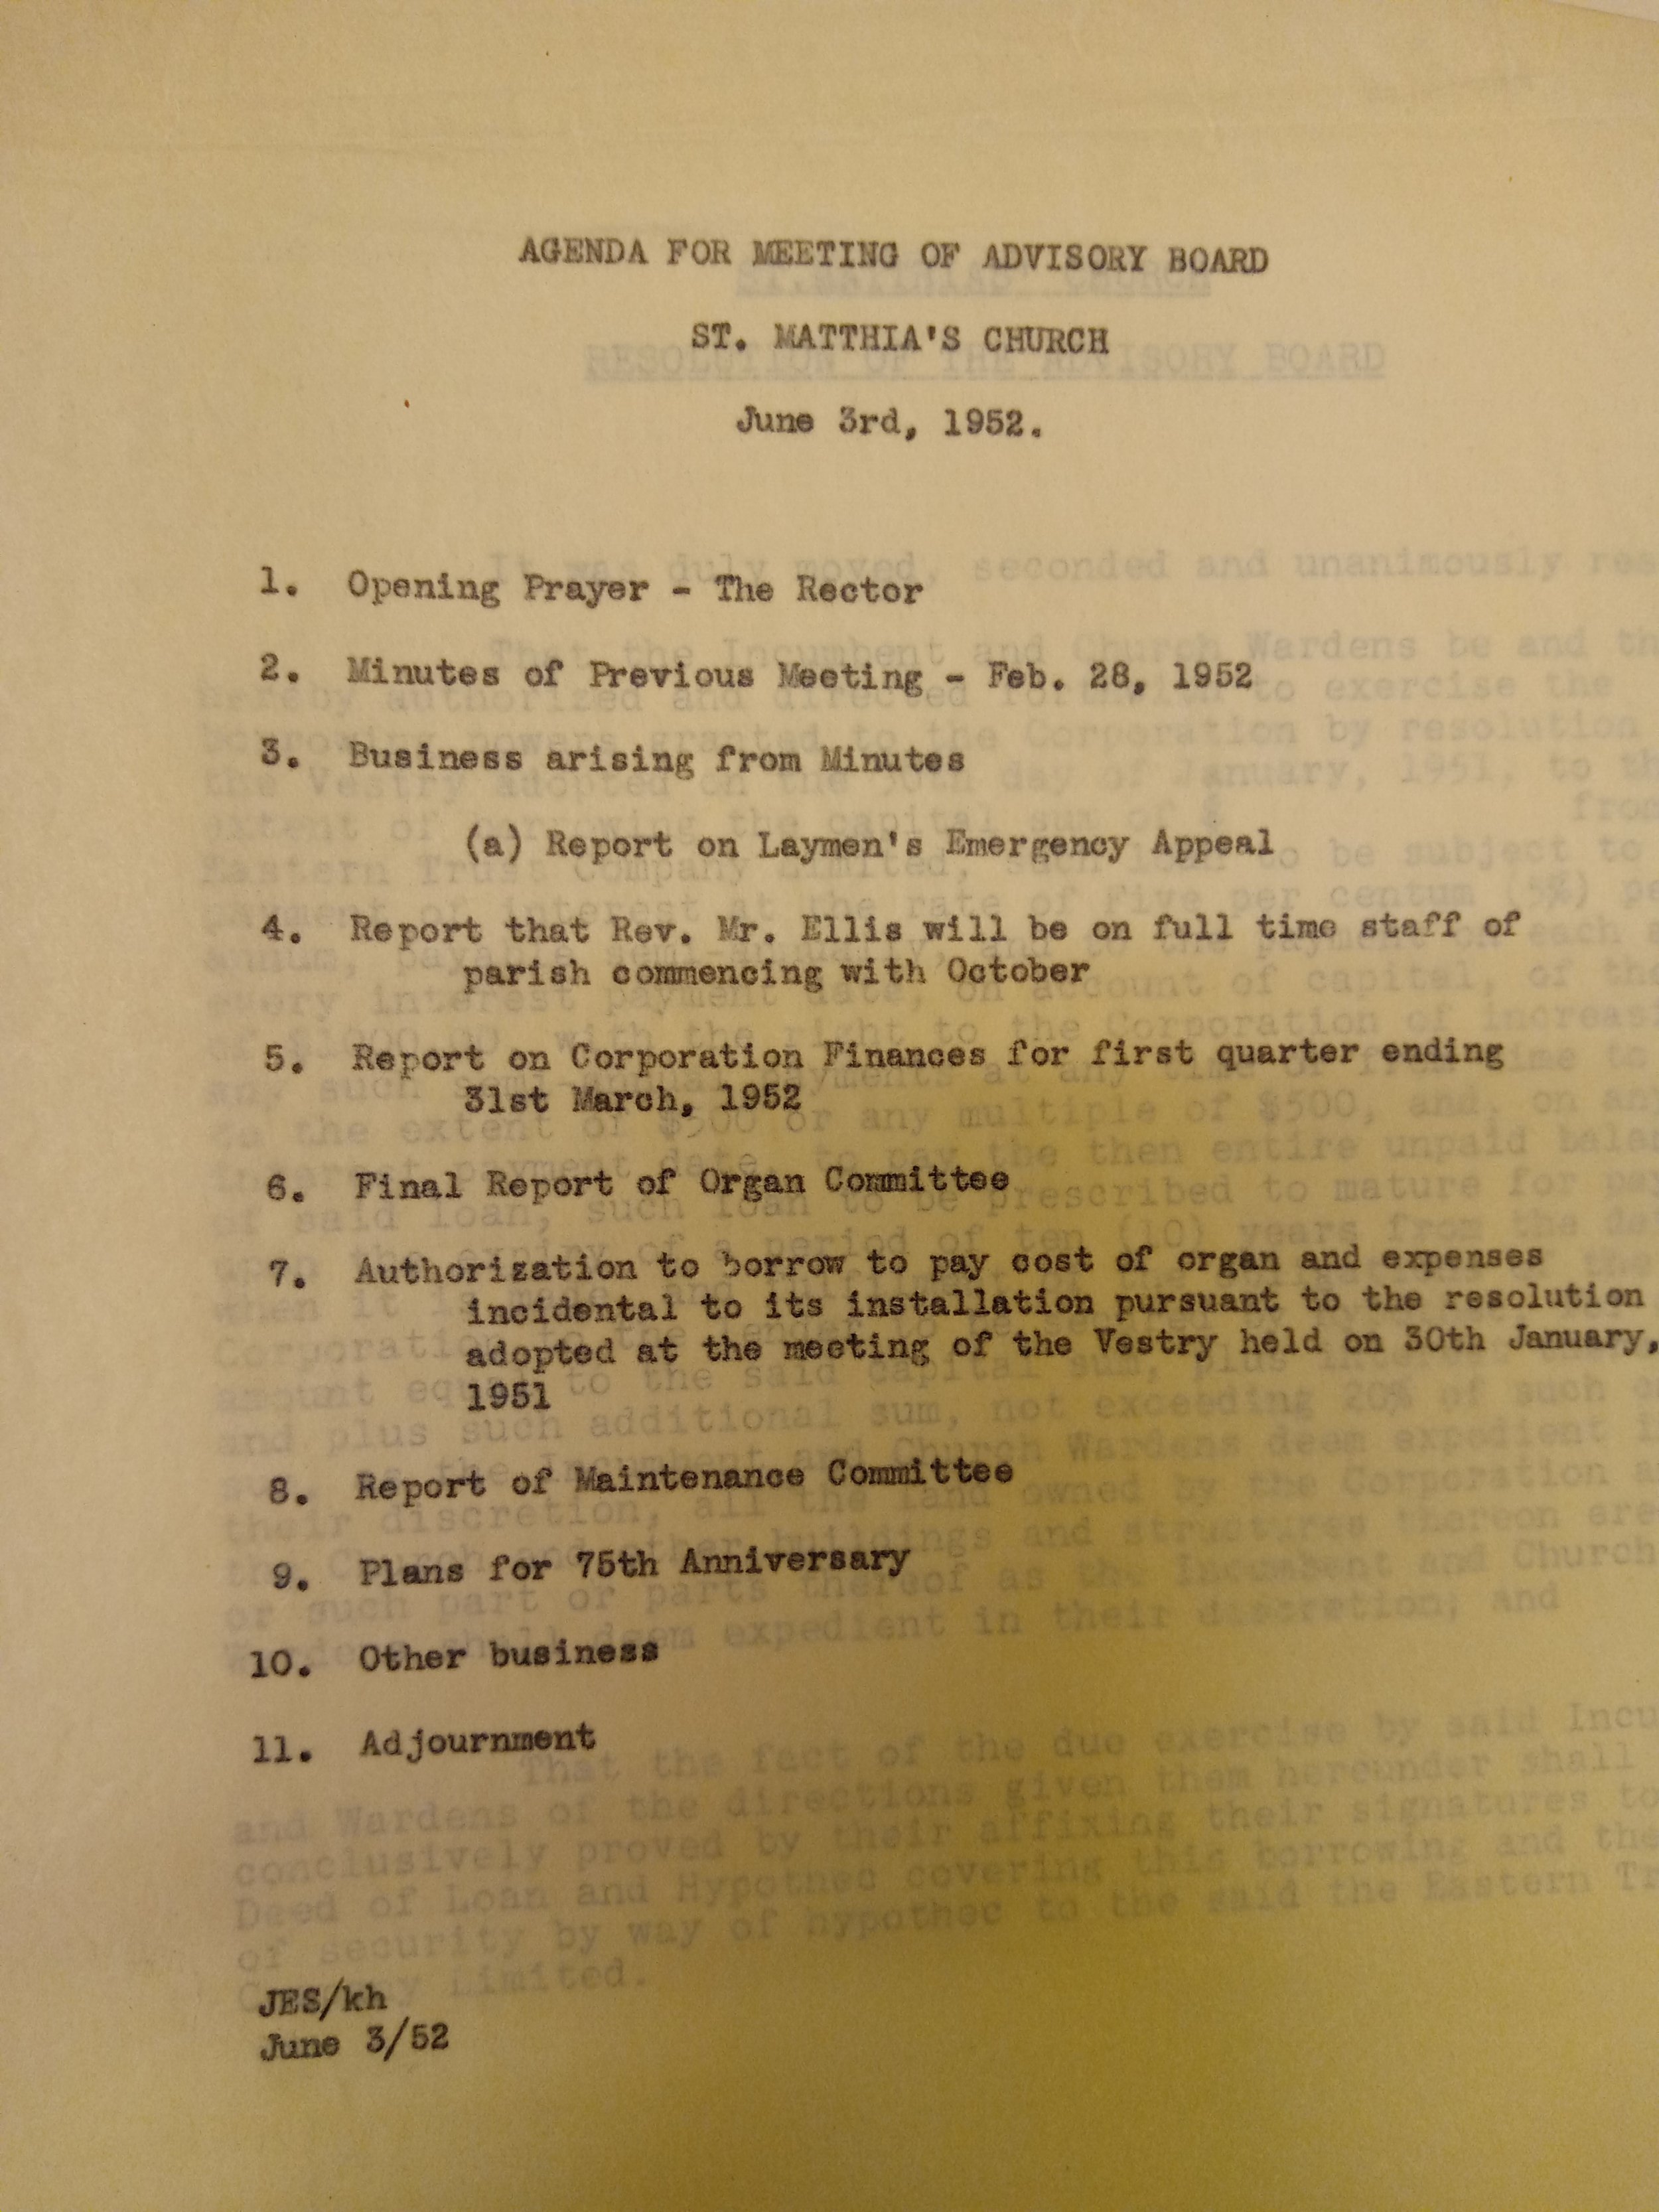 AG 1952 agenda.jpg